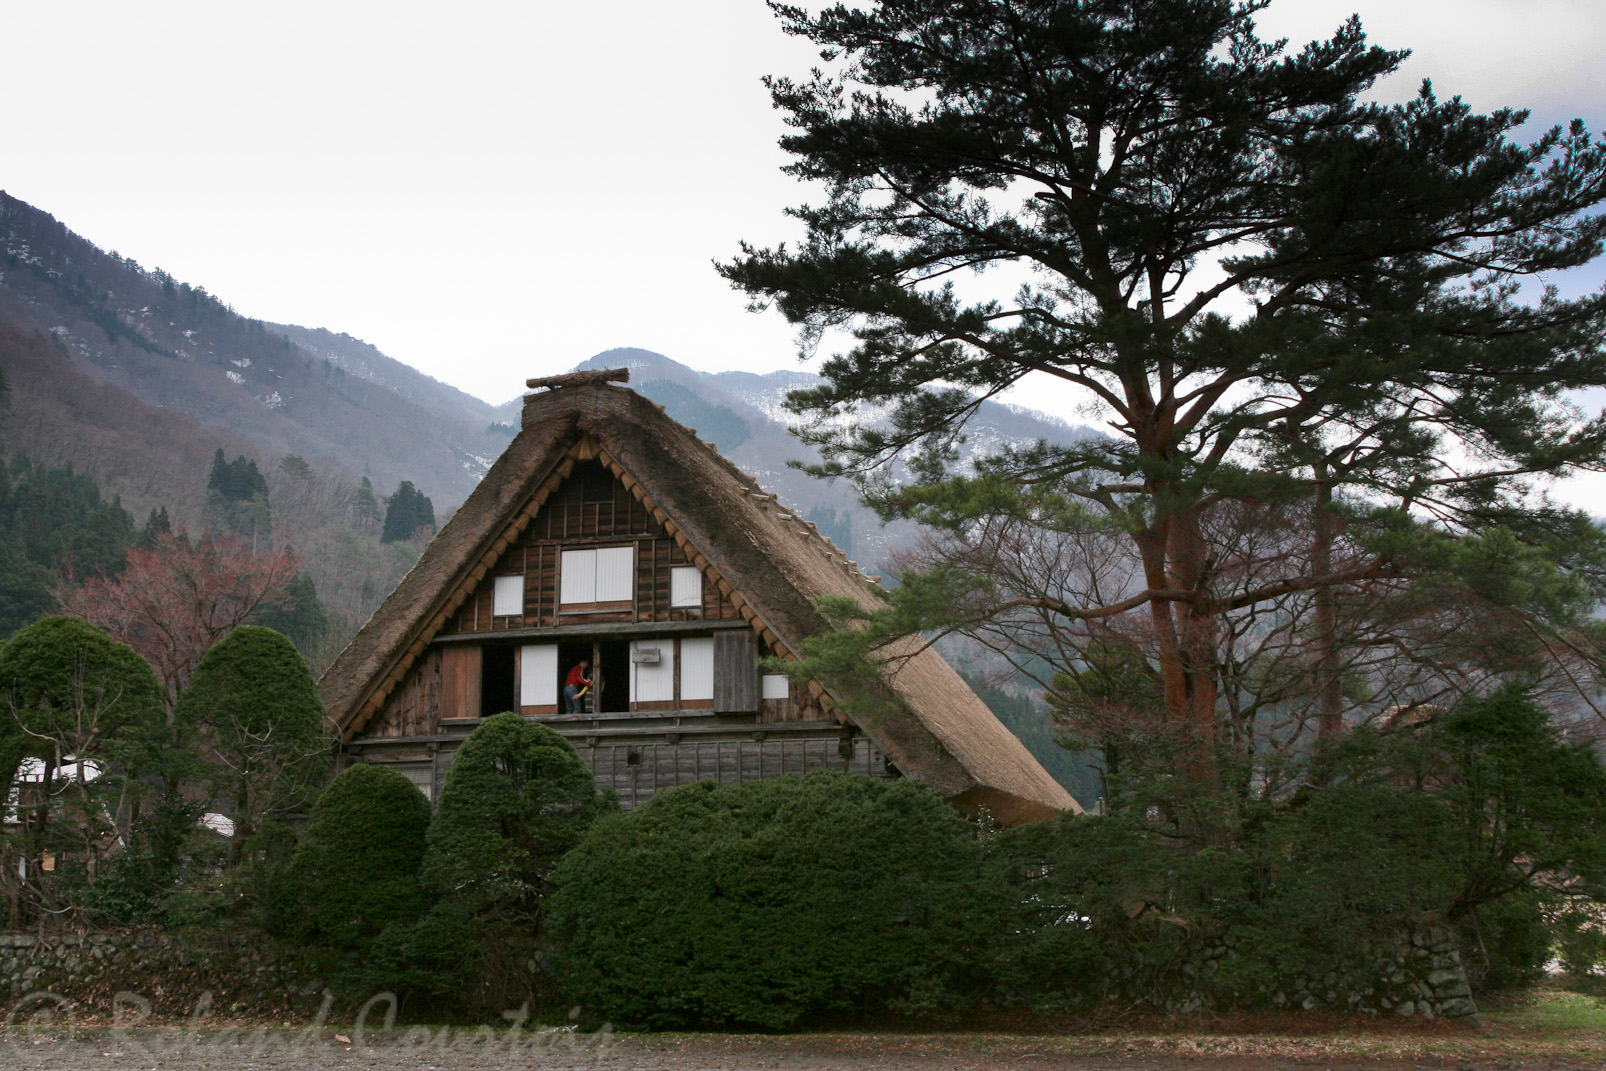 Maisons aux toits de chaume (Gassho)